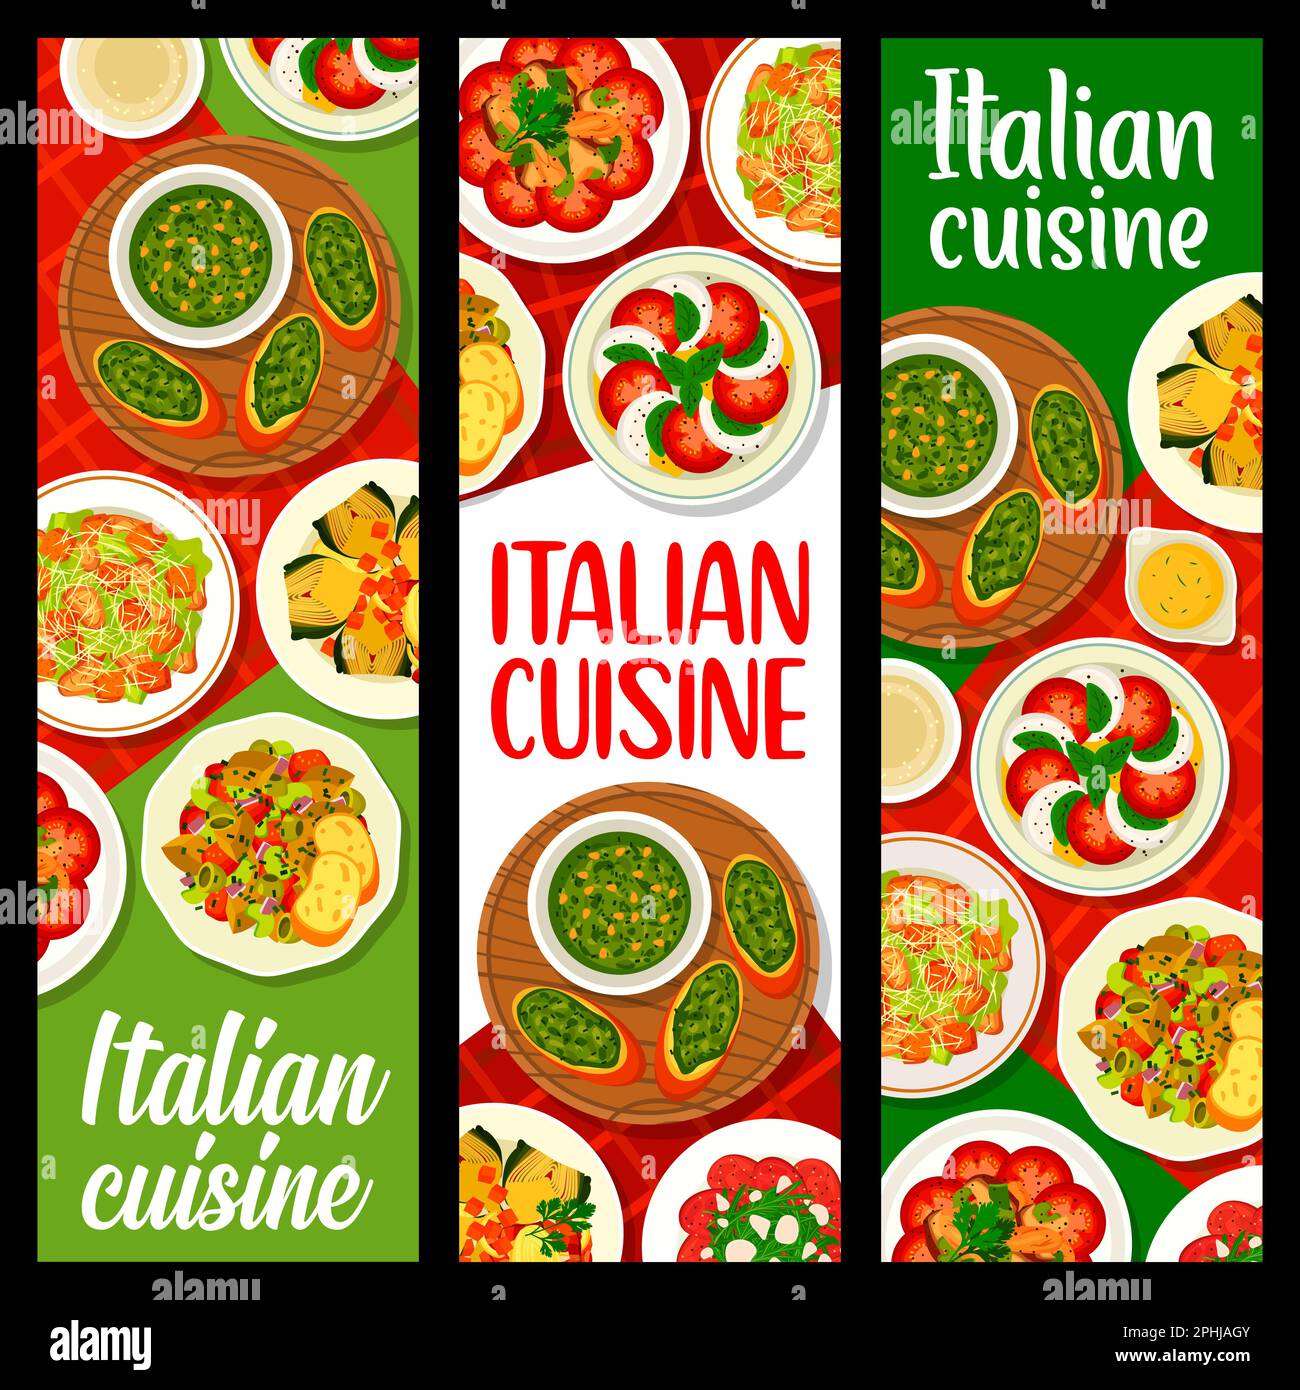 Banner für italienische Küche. Gefüllte Artischocke, Crostini mit Pesto-Sauce und Caesar-Salat, Pasta mit geräuchertem Fisch, Aubergine Caponata, Tomatenmozzar Stock Vektor